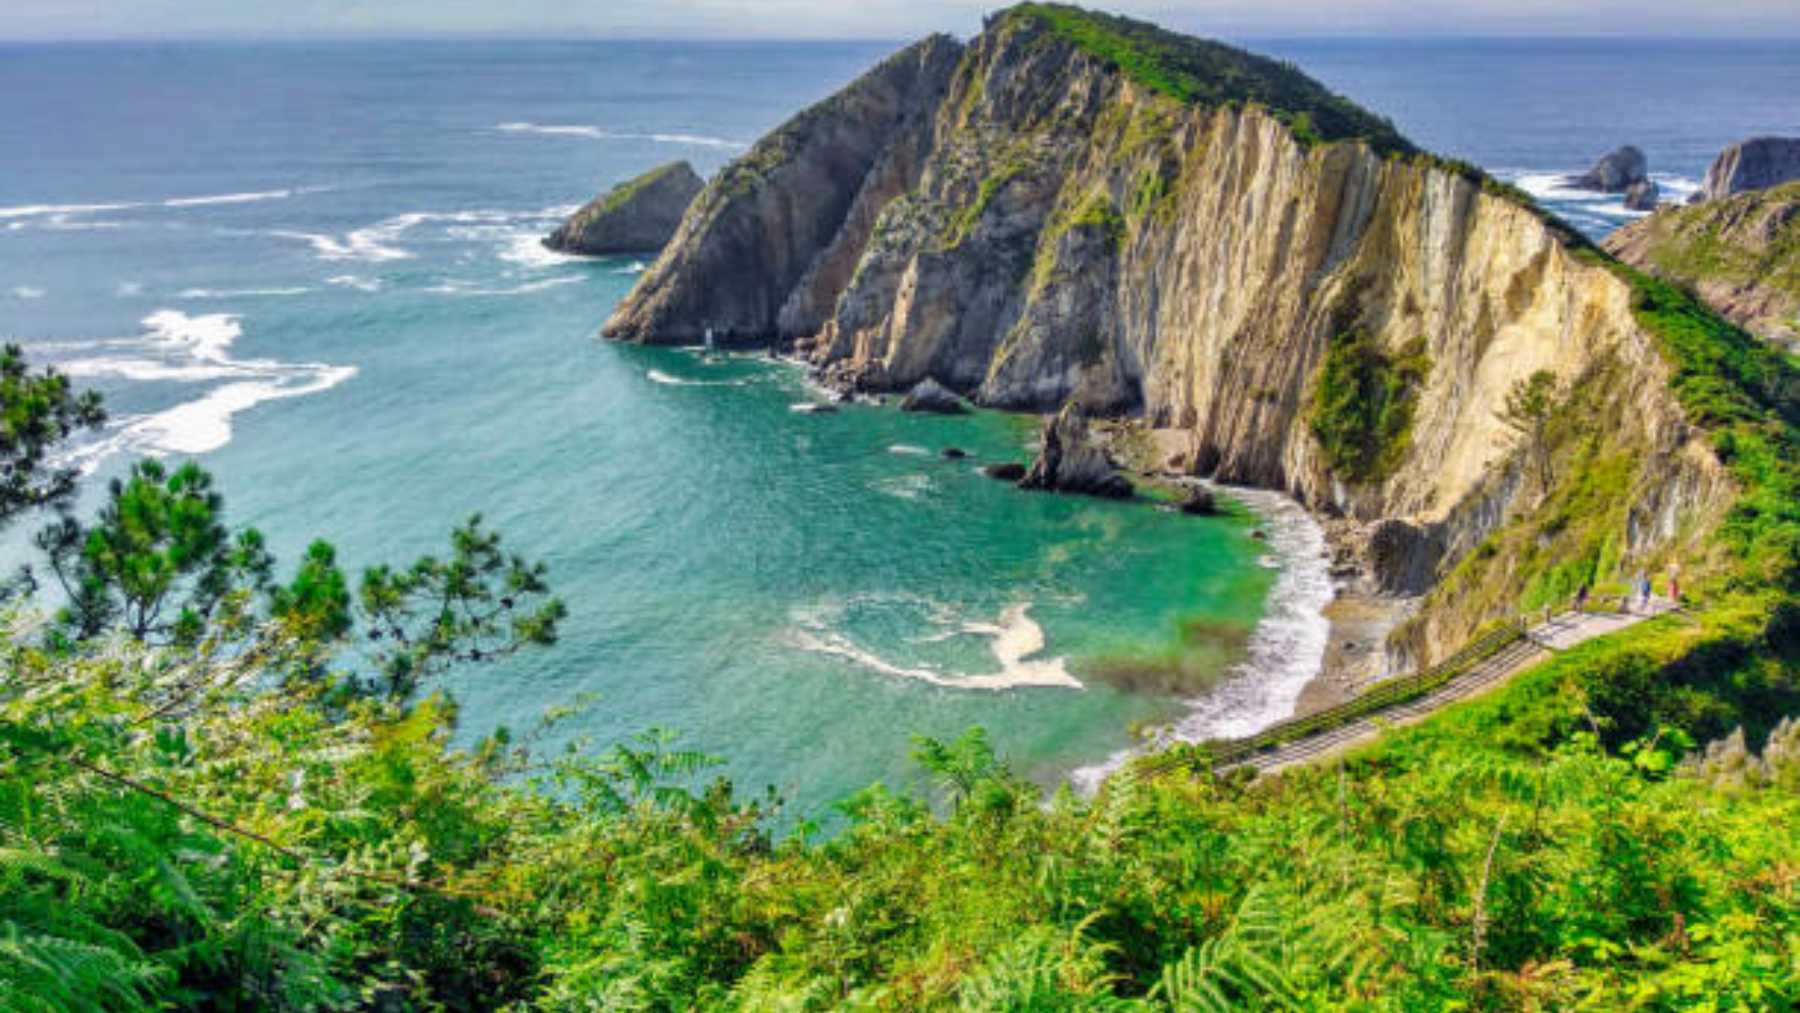 La playa del Silencio en Asturias en una de las playas que recomienda National Geographic